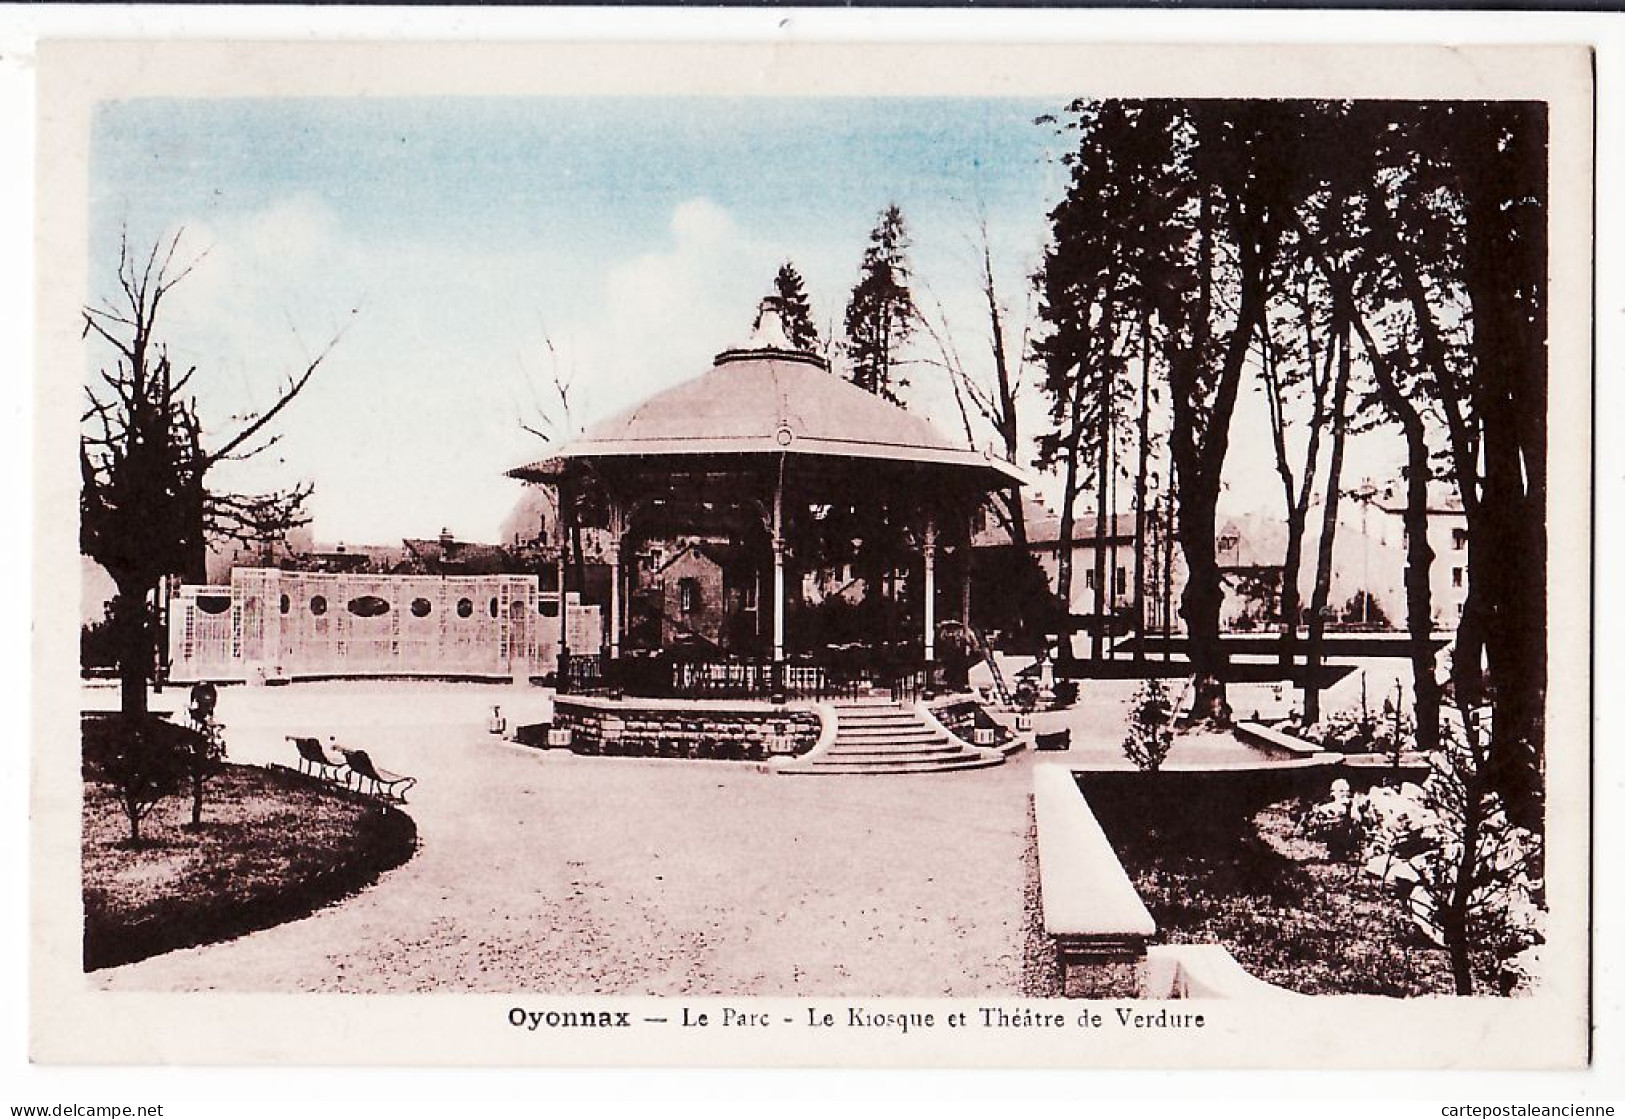 05561 / ⭐ ◉ OYONNAX Ain Le PARC Kiosque à Musique Théatre Verdure 1935 à JOANNIN Impasse Vigne Amplepuis-HUMBERT FLEURY - Oyonnax